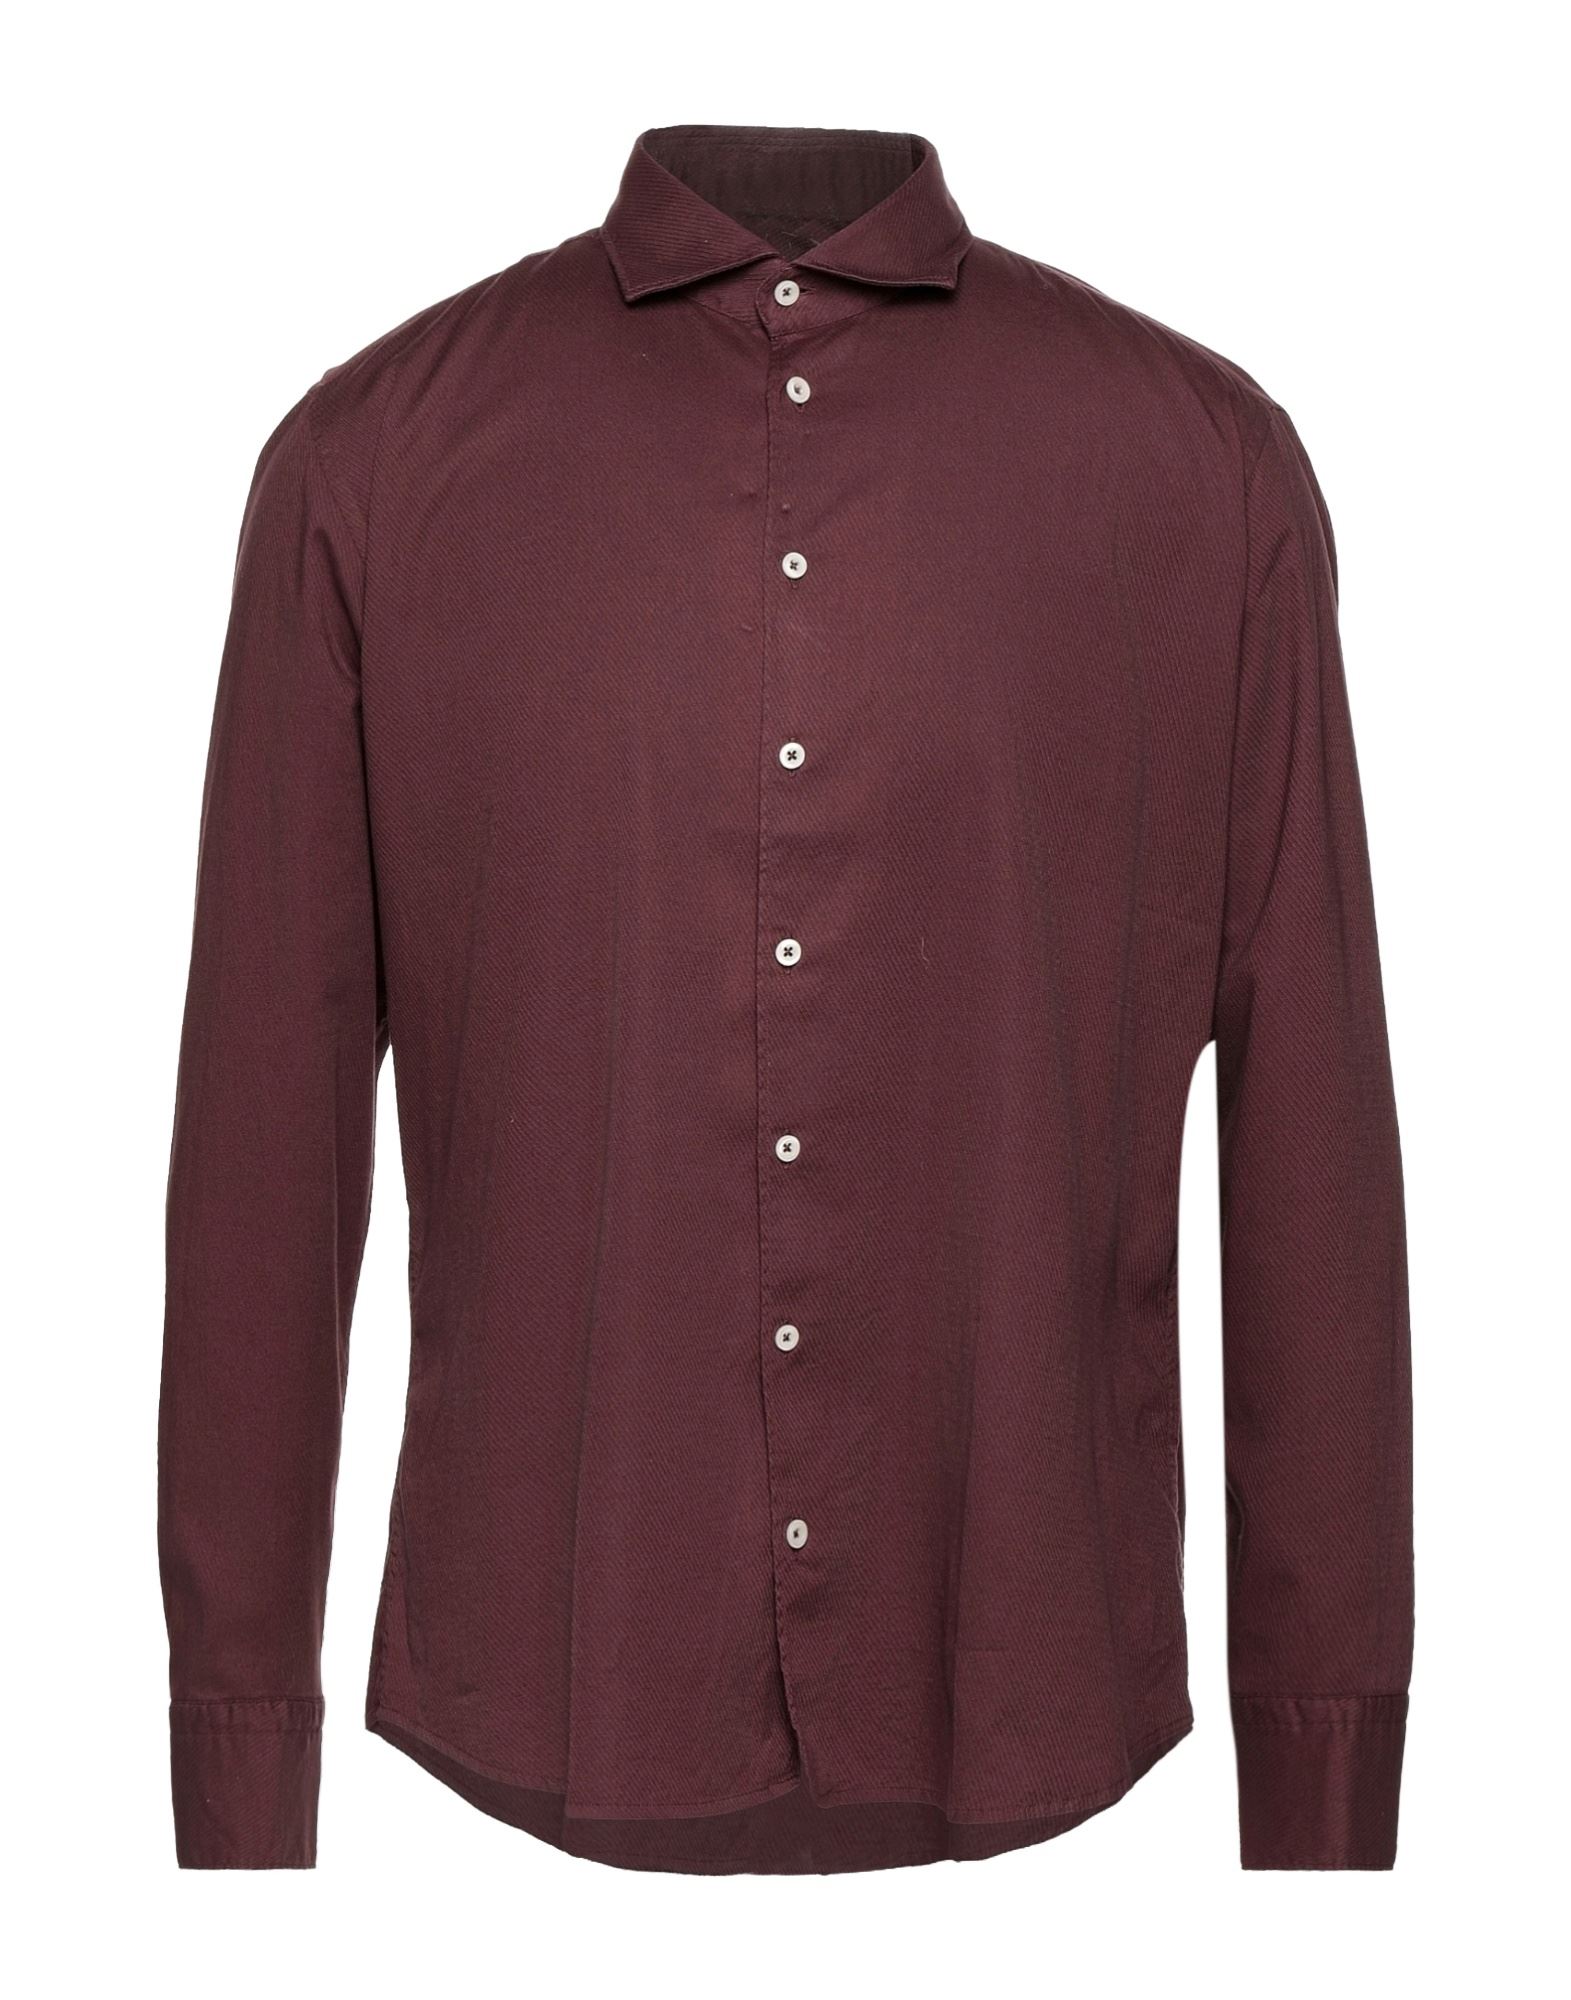 Bastoncino Man Shirt Burgundy Size 15 Cotton, Elastane In Red